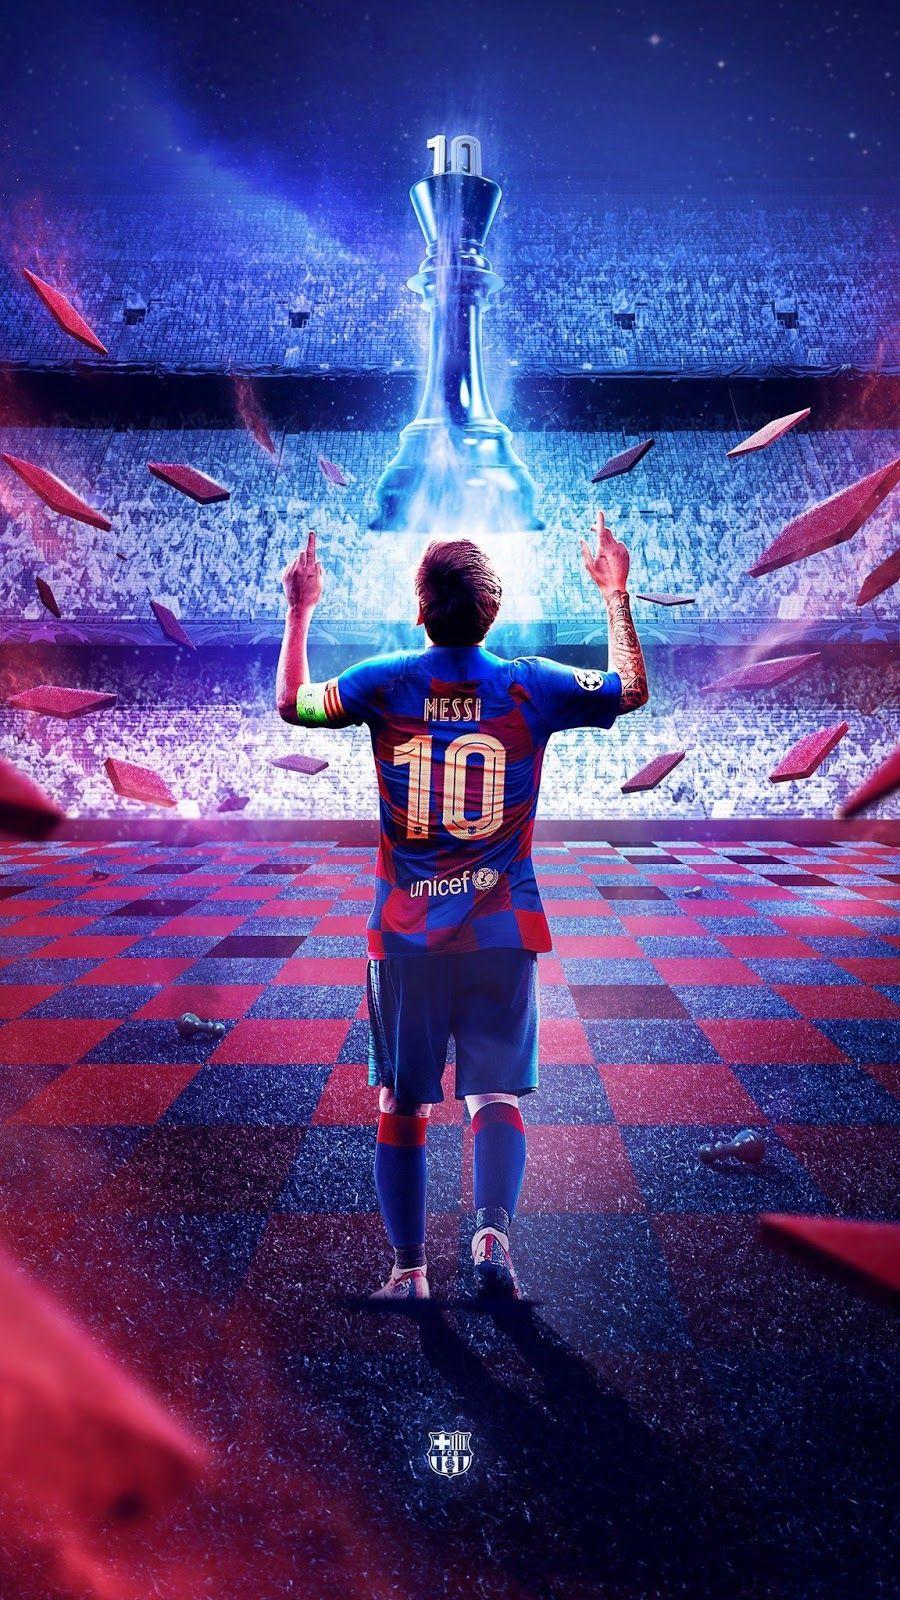 Sẵn sàng cho mùa giải mới cùng Messi 2020 wallpaper! Bức hình nền đầy đủ sức hút này chắc chắn sẽ là \